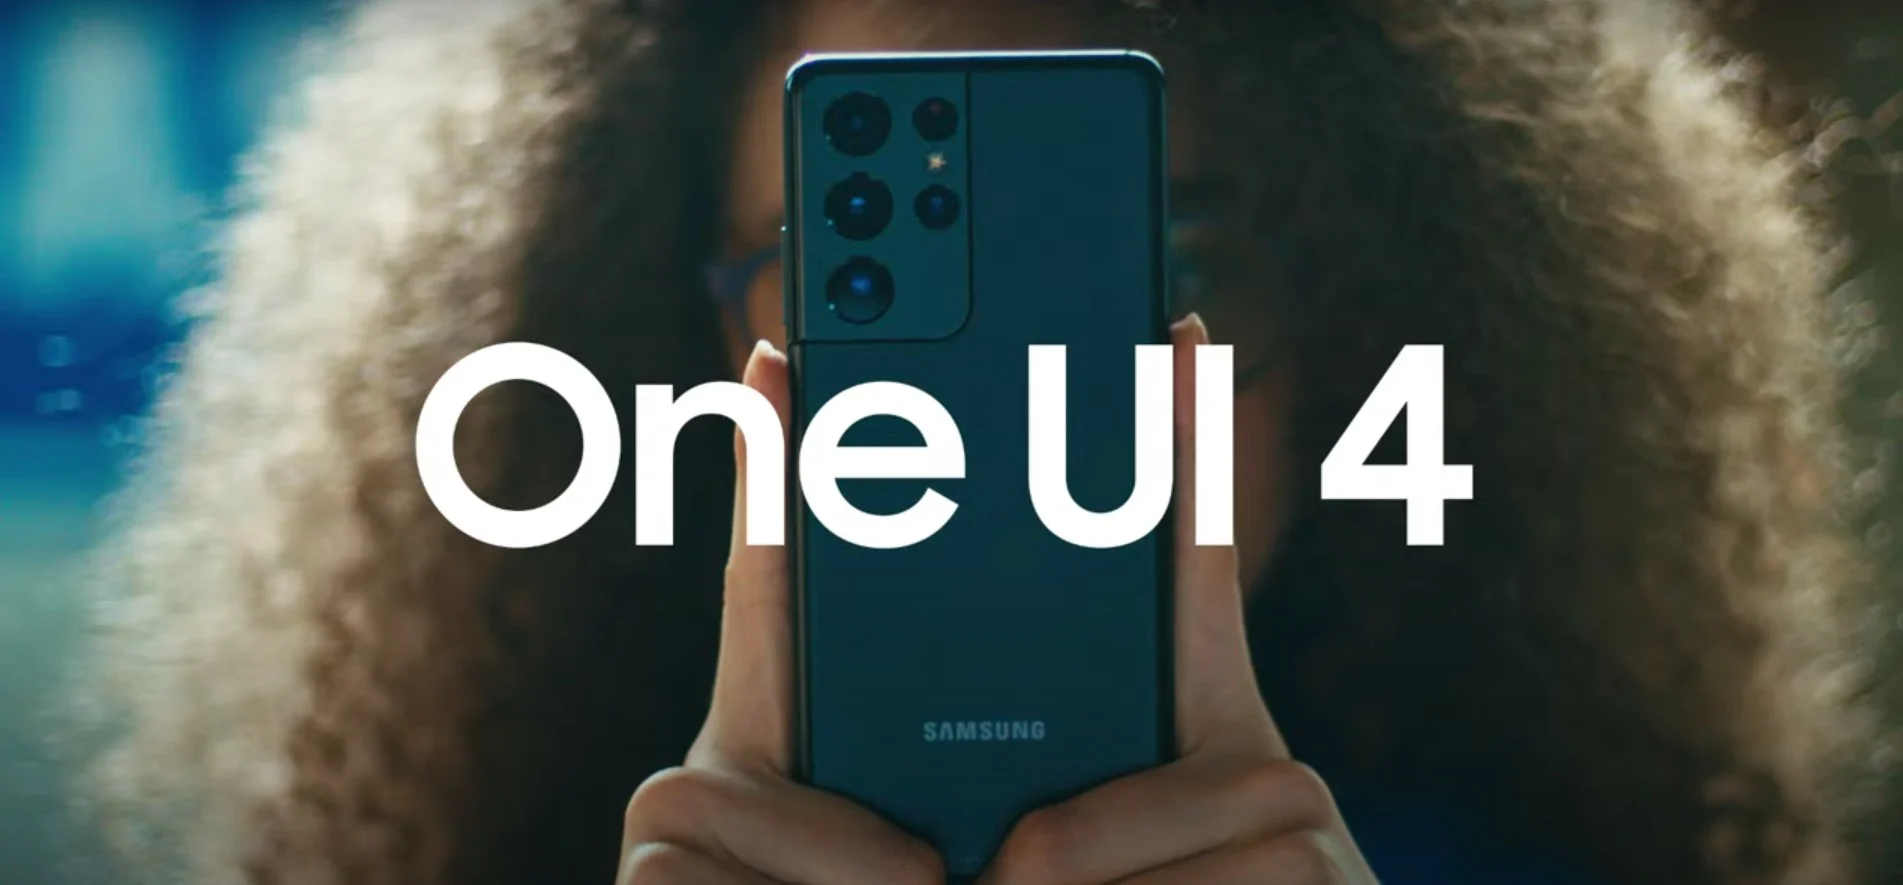 Deux smartphones Samsung bon marché recevront One UI 4.0 plus tôt que prévu